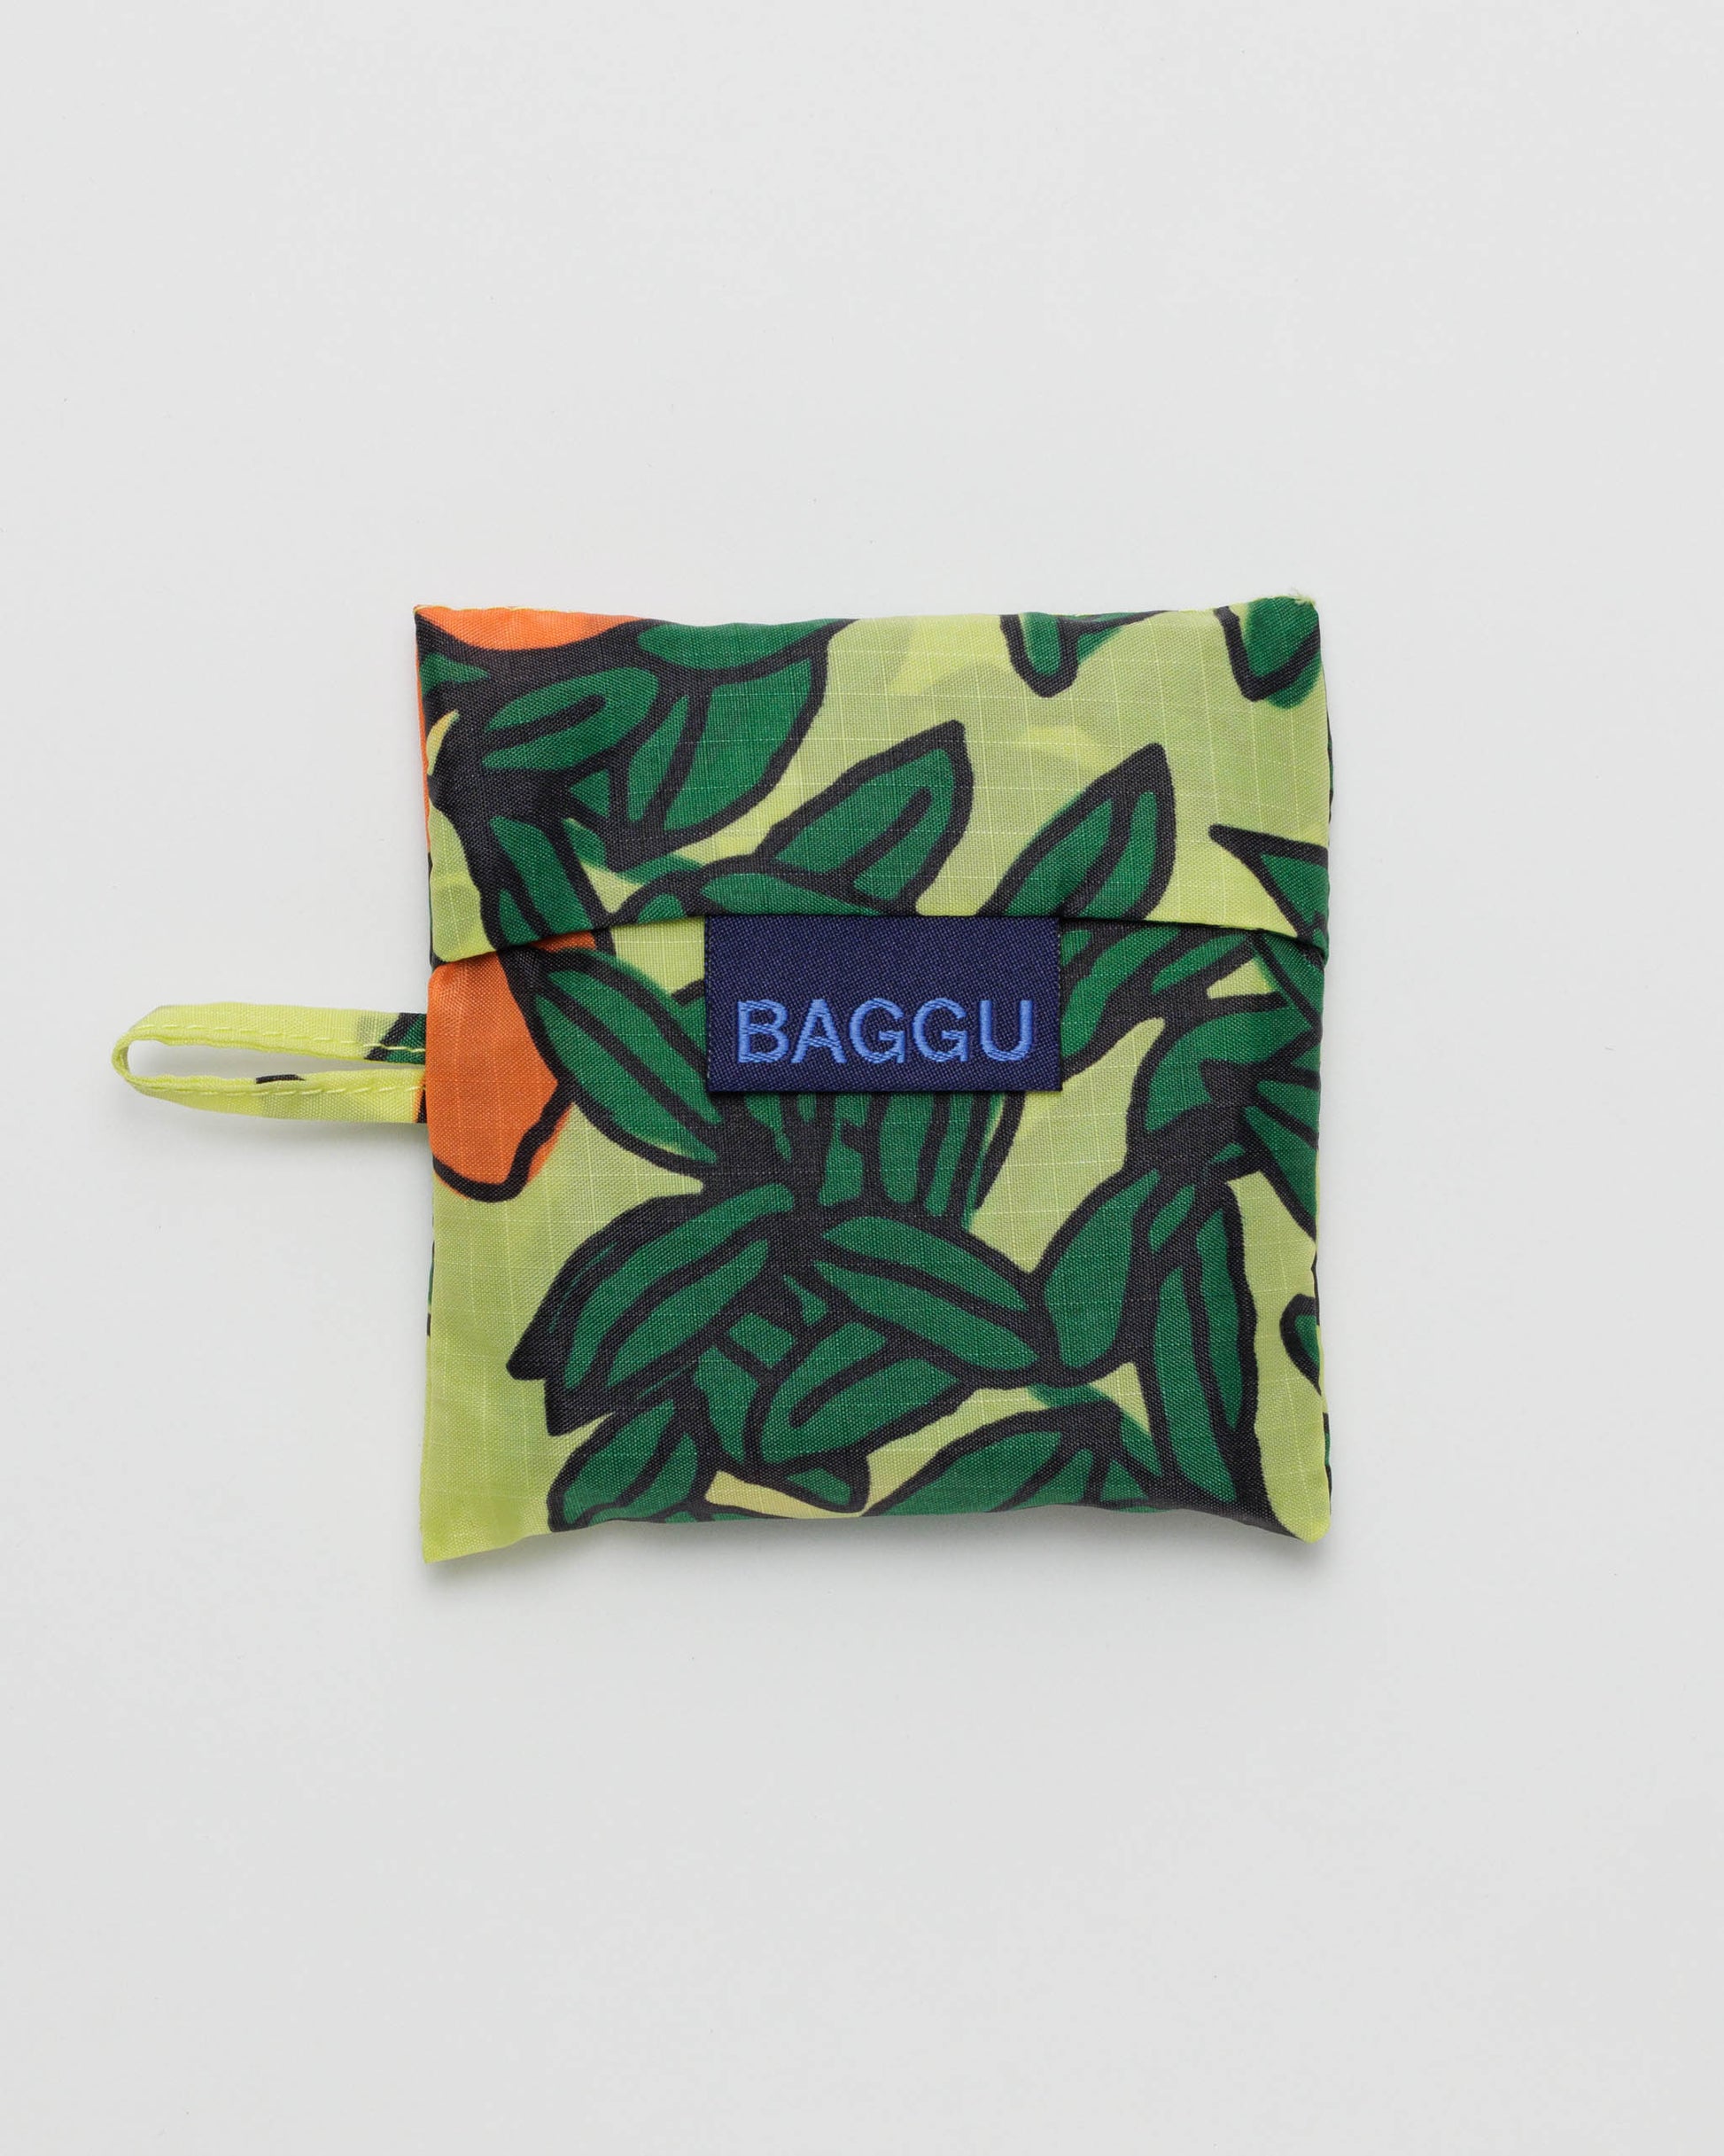 Baby BAGGU Reusable Bag - Orange Tree Yellow | RALLY RALLY Singapore